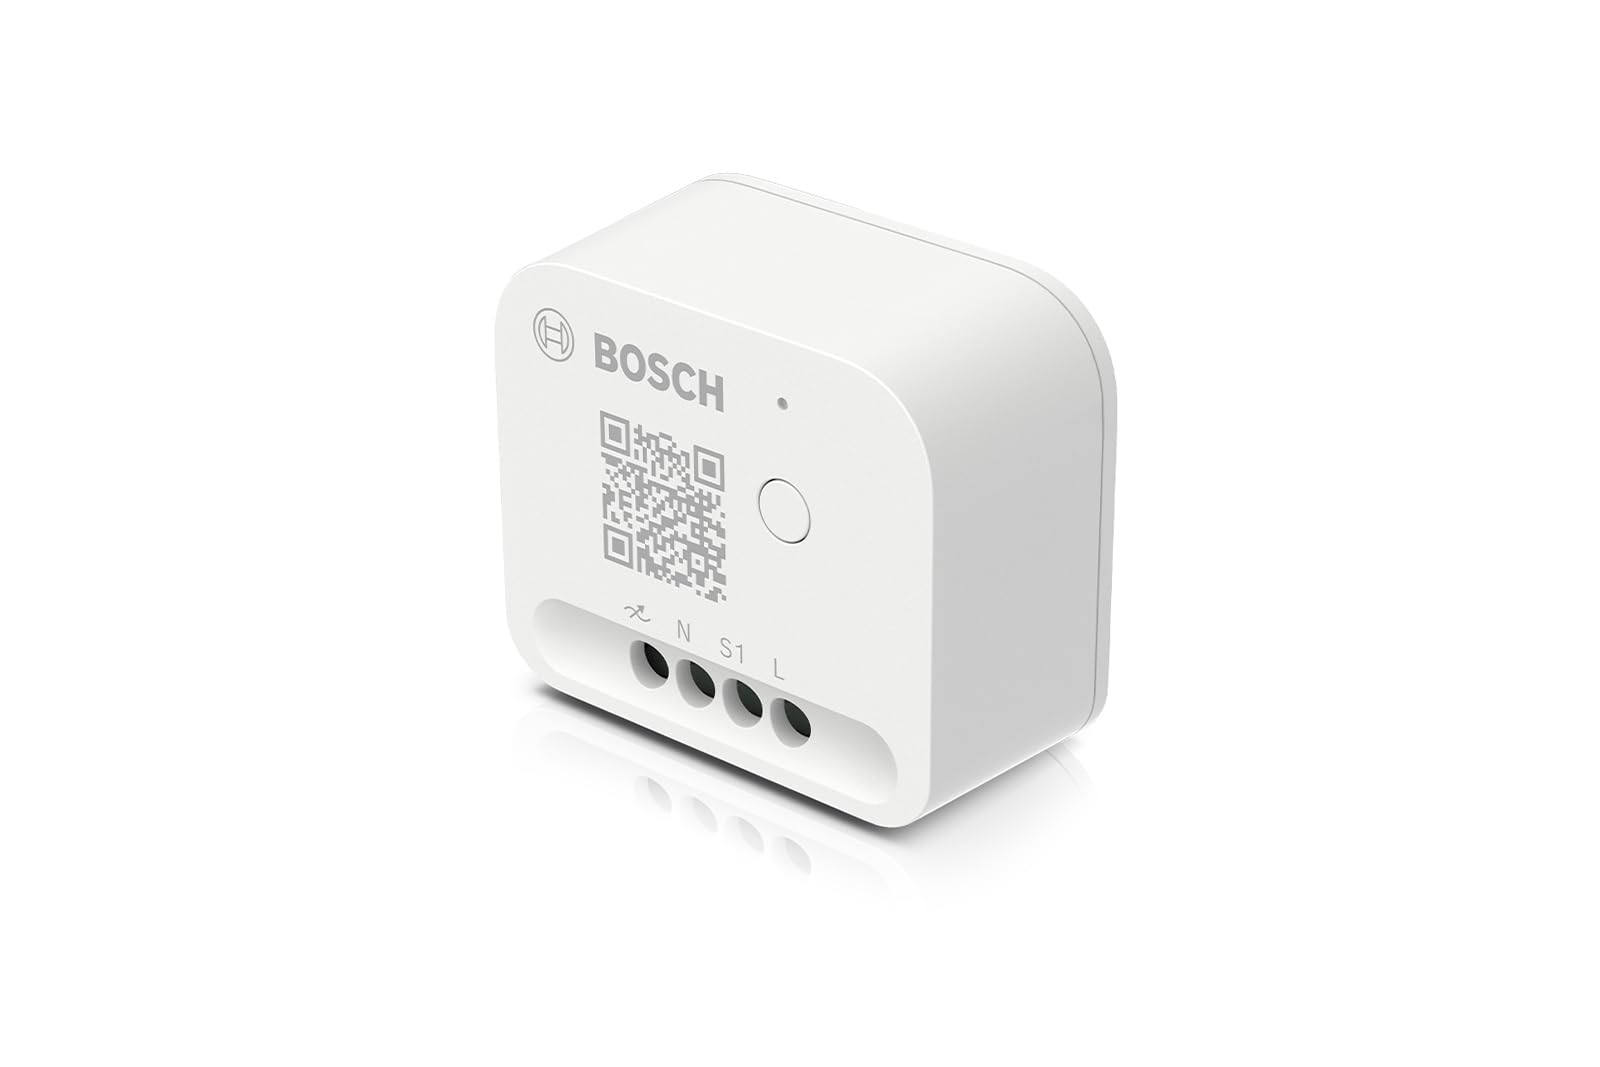 Bosch Smart Home Dimmer Schalter, Aktor zur smarten Steuerung von dimmbarer Beleuchtung, kompatibel mit Amazon Alexa, Google Assistant und Apple HomeKit